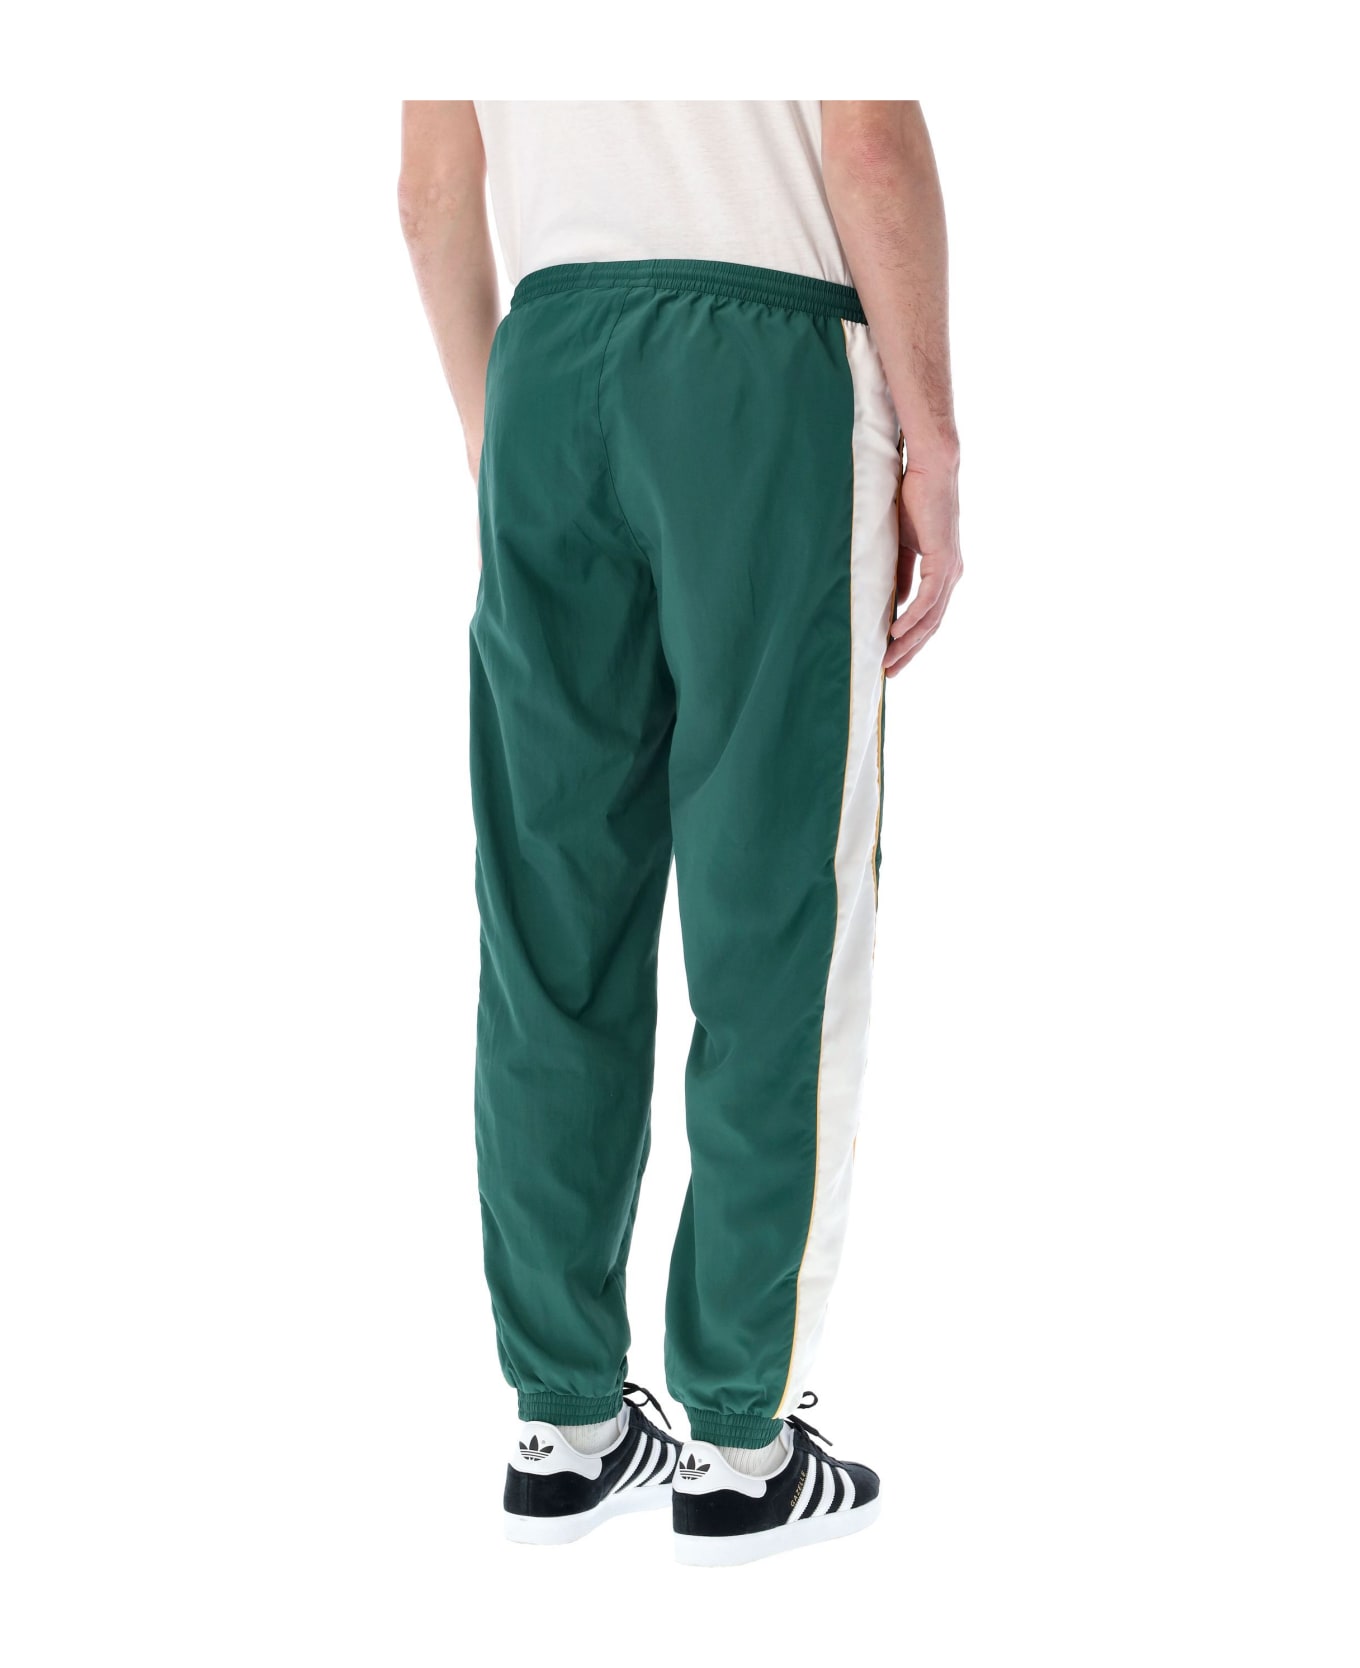 Adidas Originals Jogging Pants - GREEN